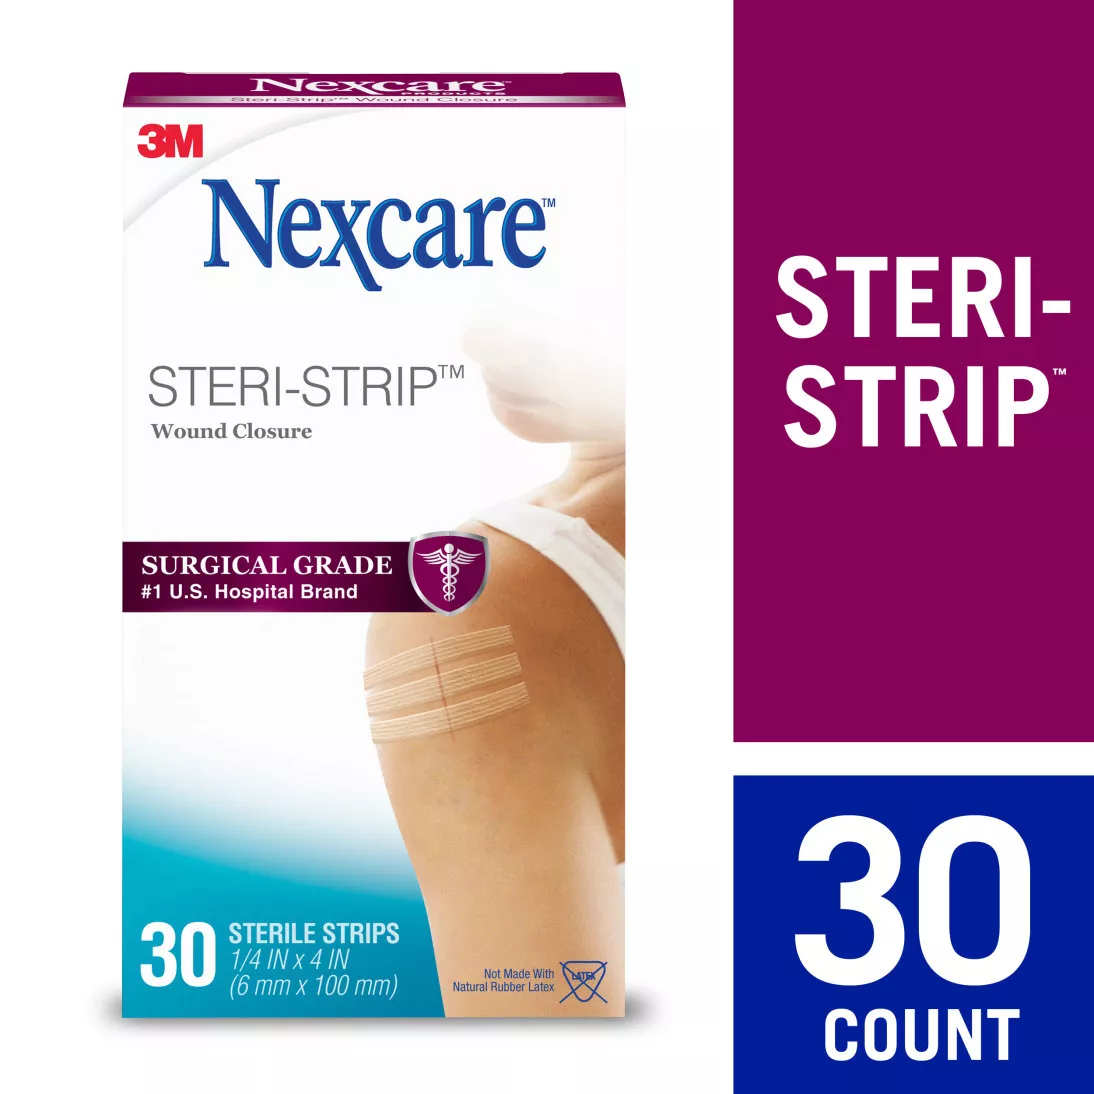 Nexcare™ Steri-Strip™ Wound Closure H1546, 1/4 in x 4 in (6 mm x 100 mm), 30 ct